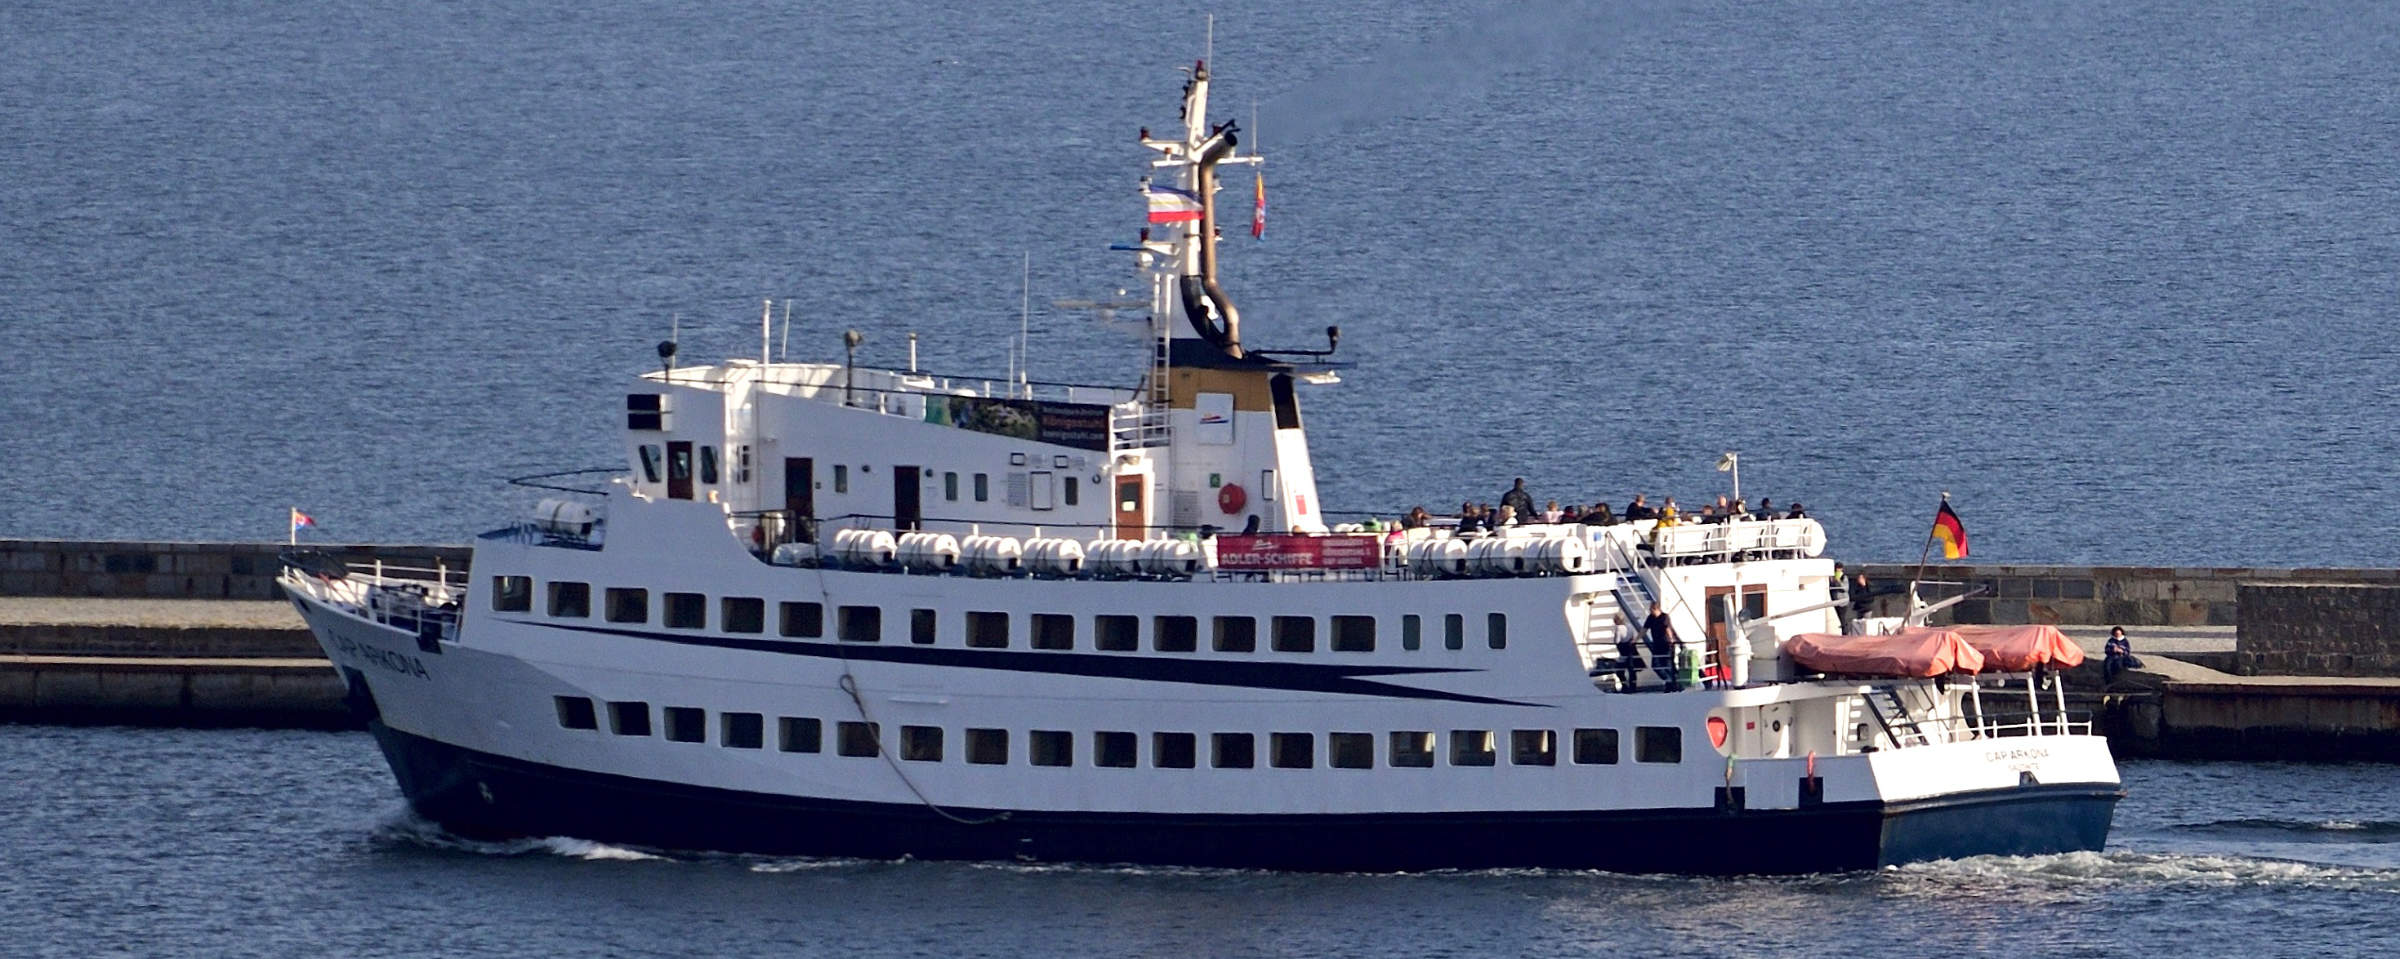 Ausflugsboot für Touristen auf der Ostsee.